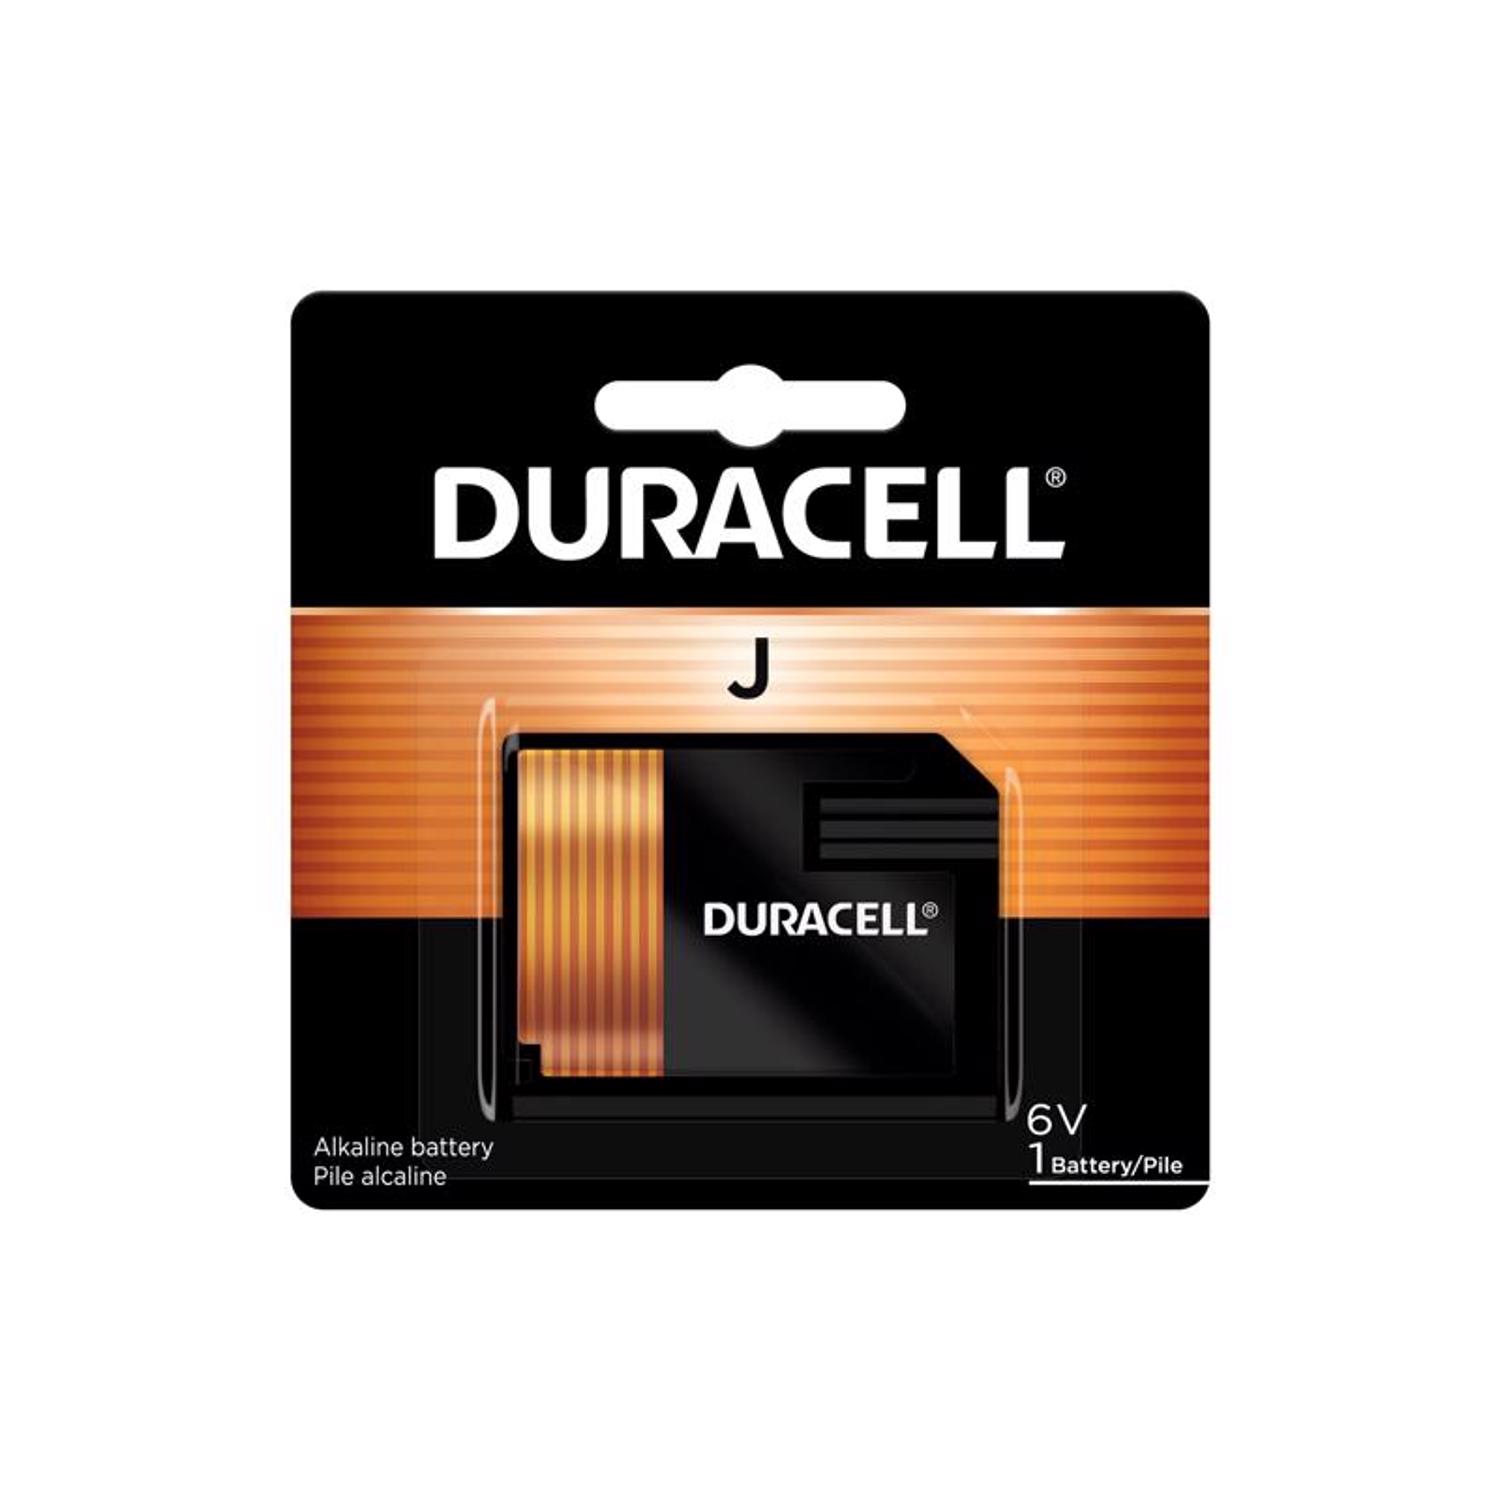 Photos - Circuit Breaker Duracell Alkaline J 6 V 0.58 mAh Medical Battery 1 pk 7K67B9K 